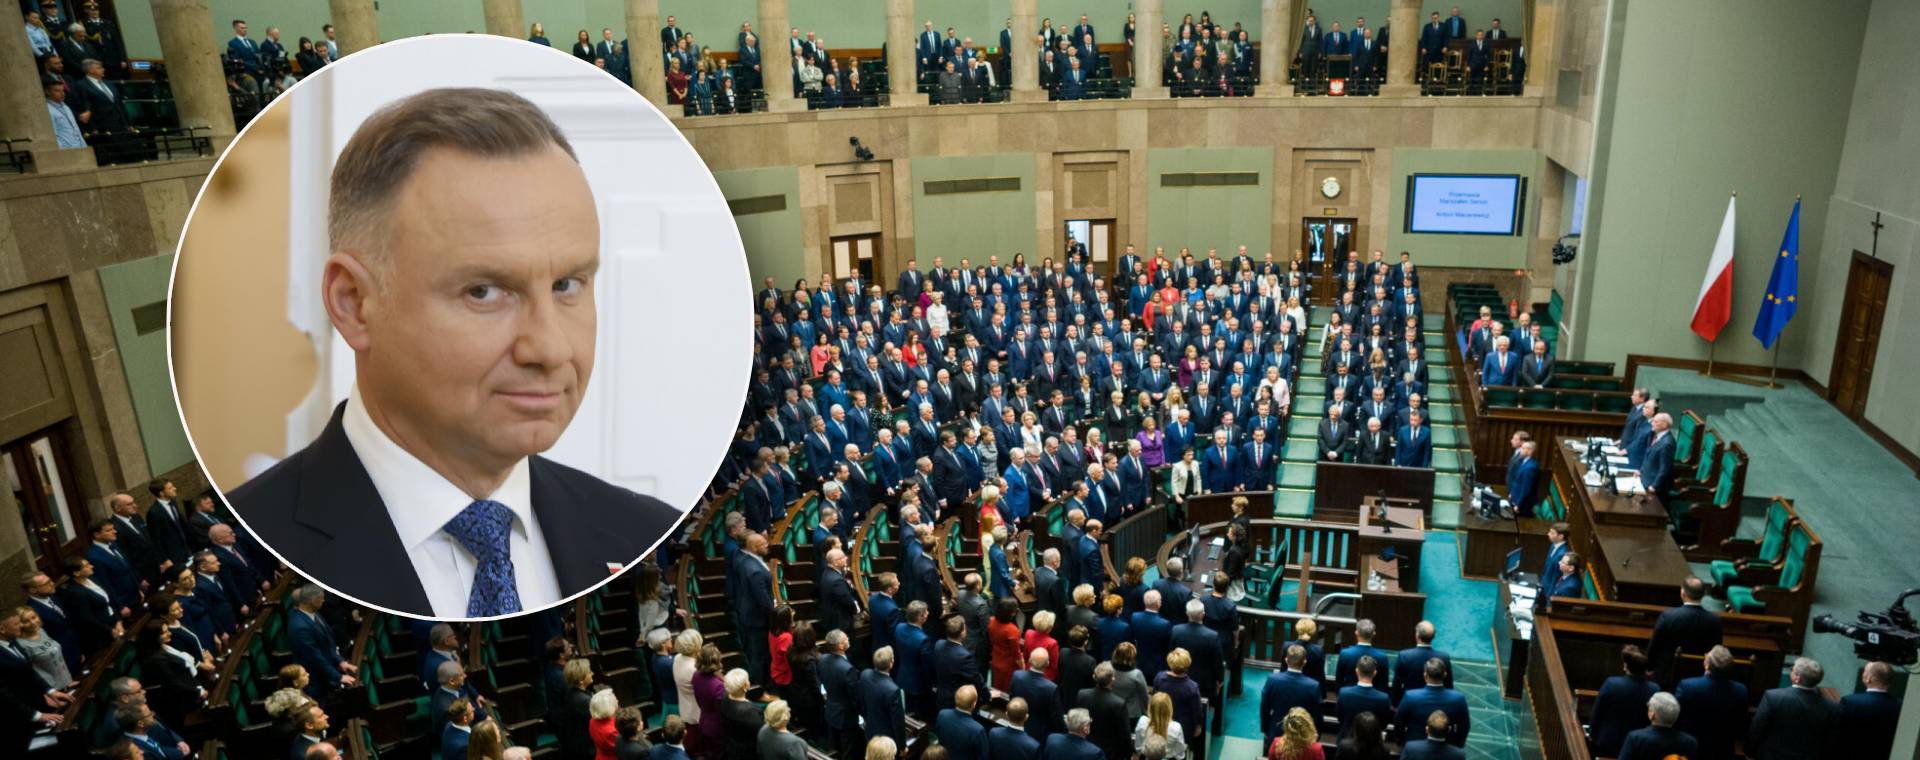 Prezydent Andrzej Duda zdecyduje, kiedy odbędzie się pierwsze posiedzenie Sejmu i komu powierzy funkcję premiera. Na zdjęciu inauguracyjne posiedzenie Sejmu po wyborach w 2019 r.